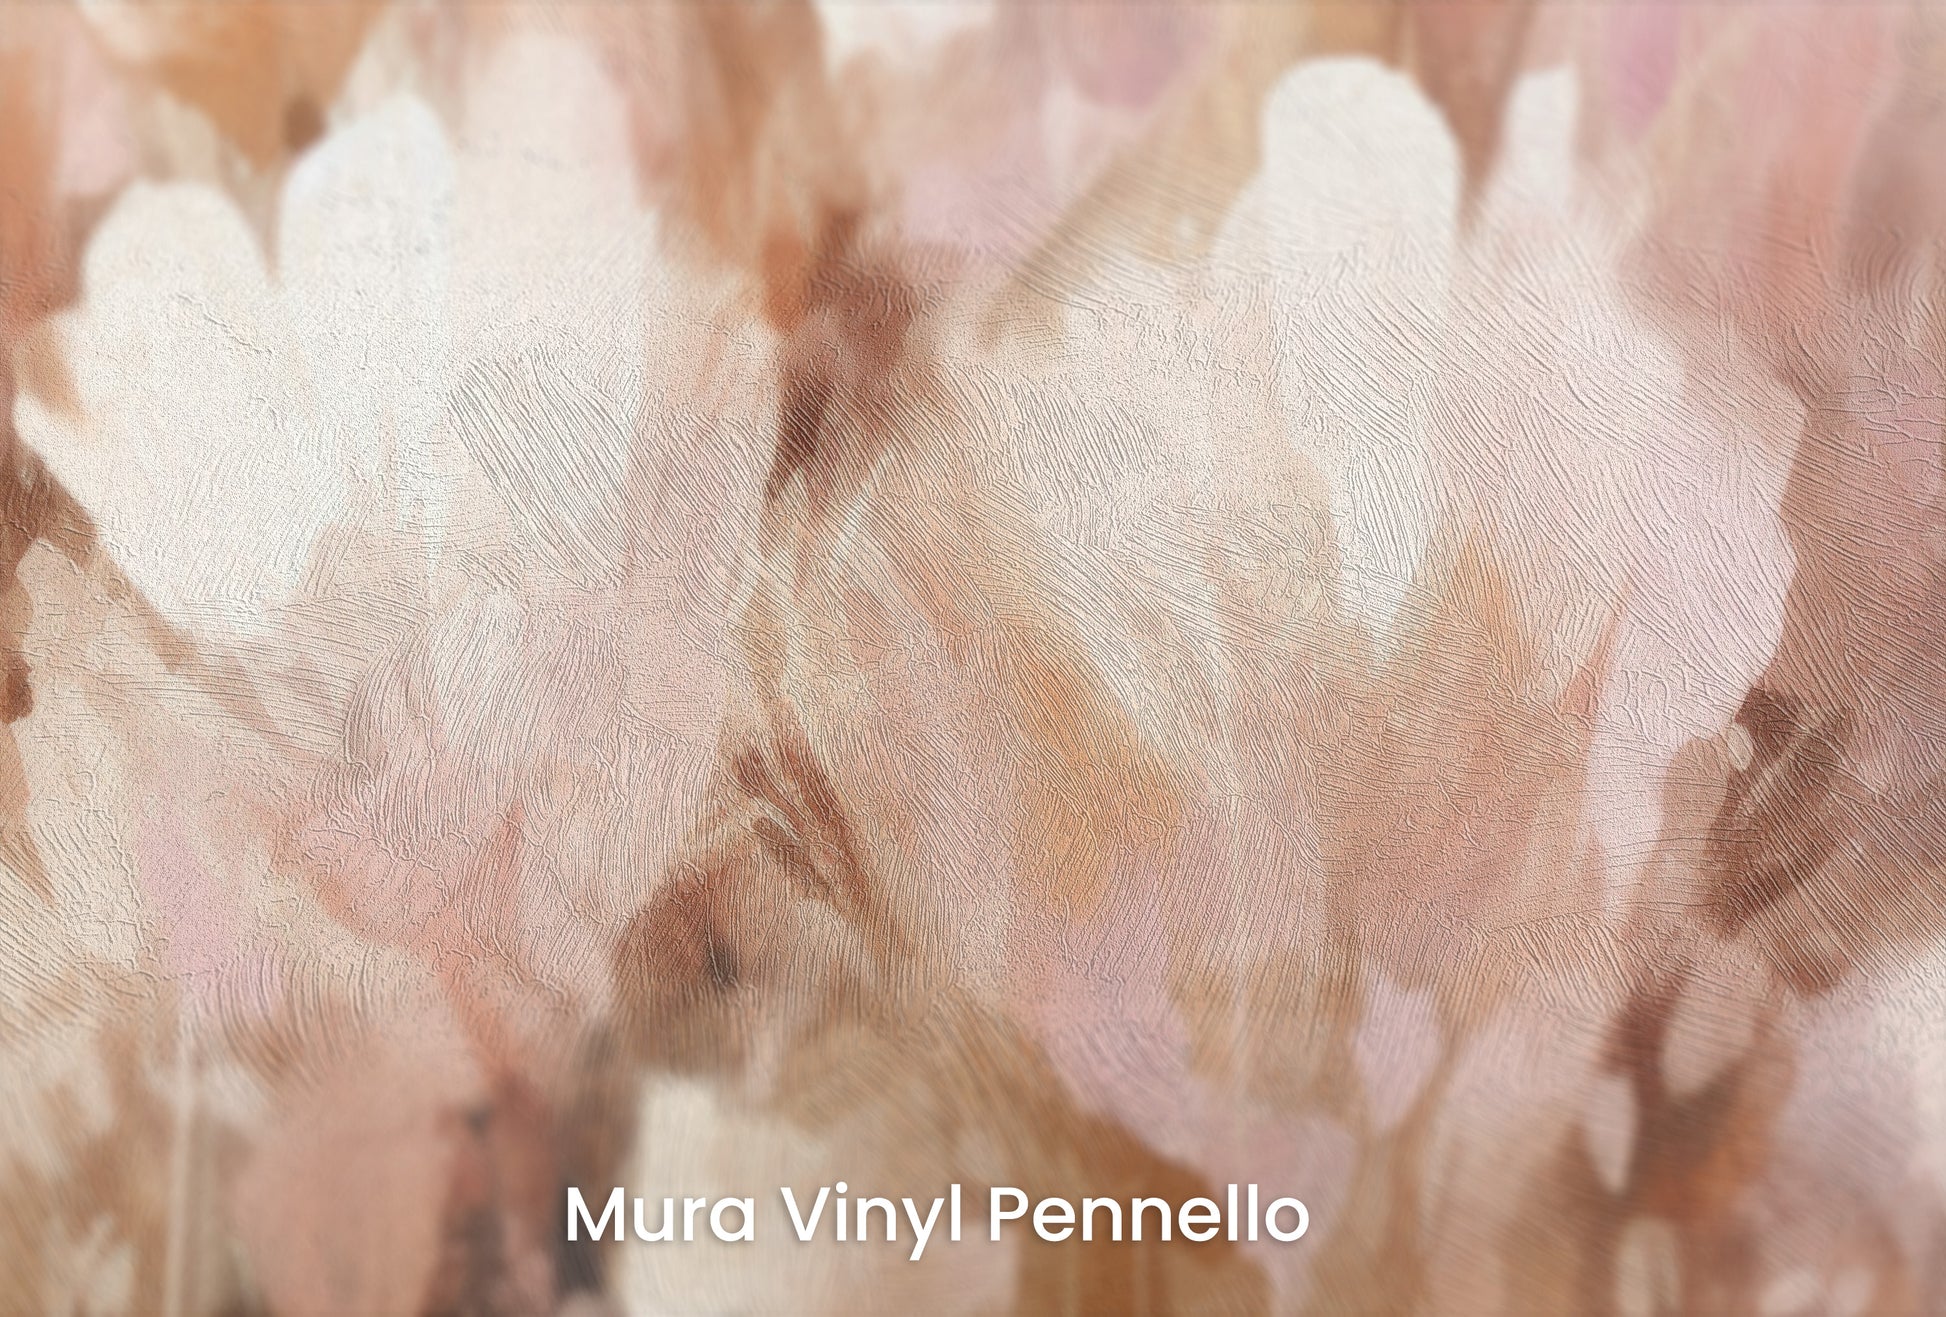 Zbliżenie na artystyczną fototapetę o nazwie Petal Whisper na podłożu Mura Vinyl Pennello - faktura pociągnięć pędzla malarskiego.